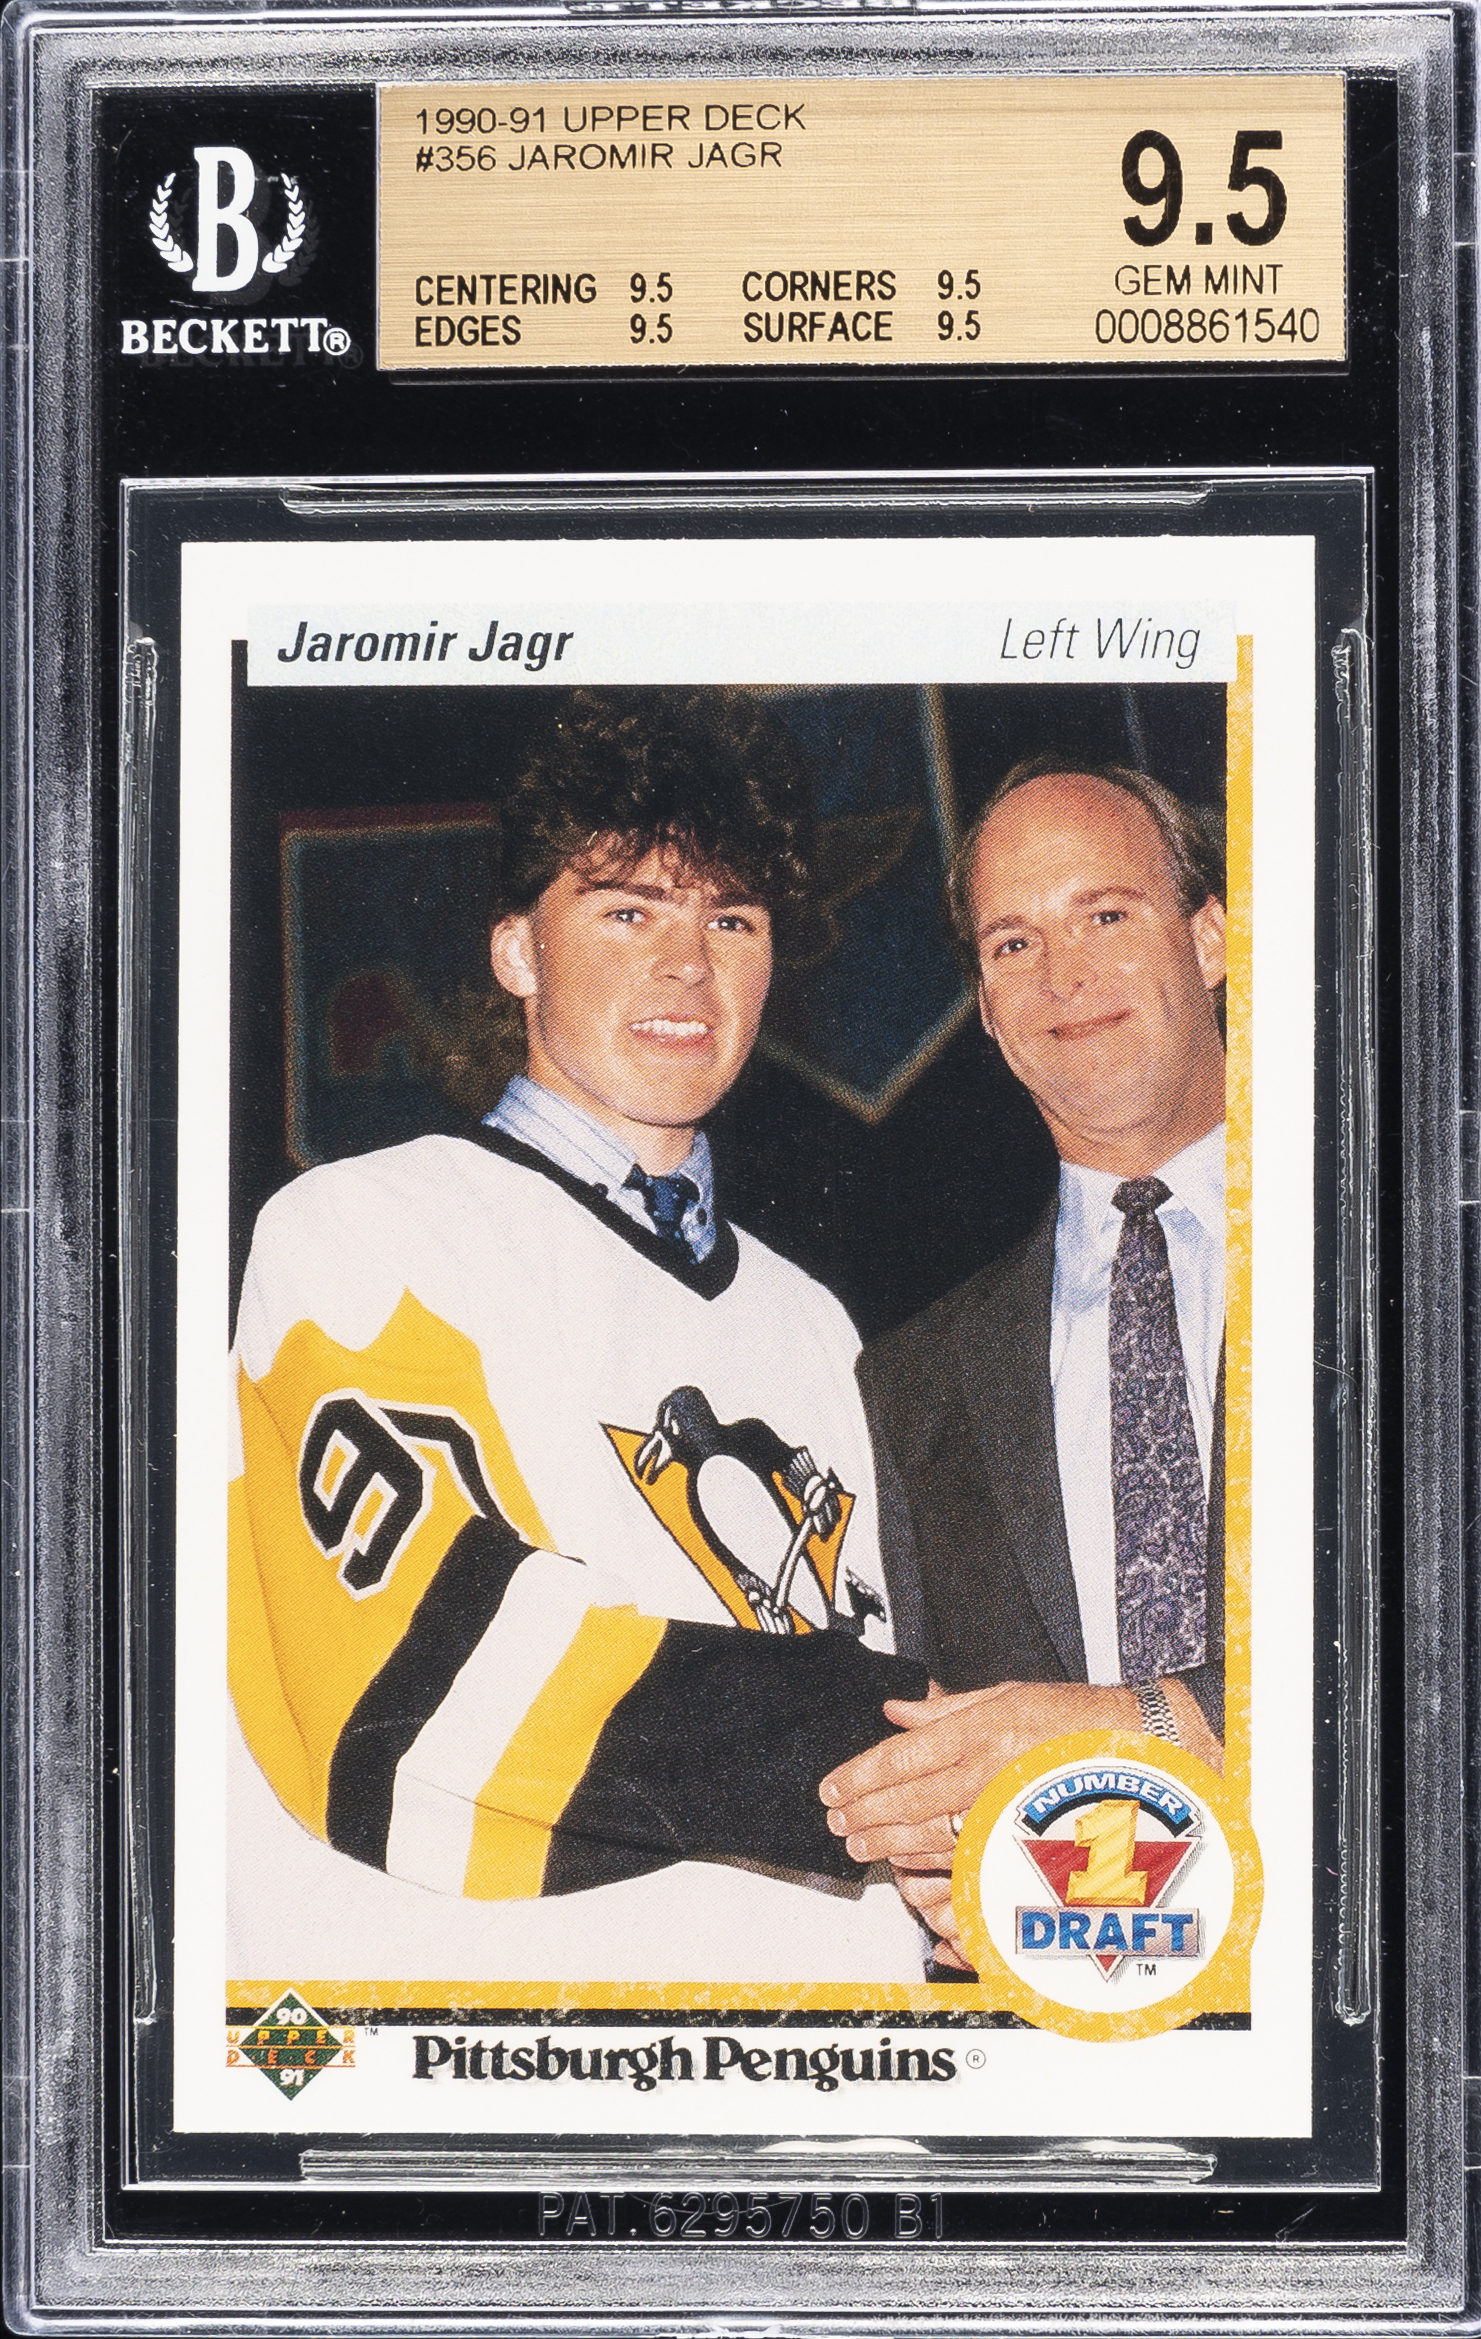 1990-91 Upper Deck Hockey #356 Jaromir Jagr Rookie Card – BGS GEM MINT 9.5